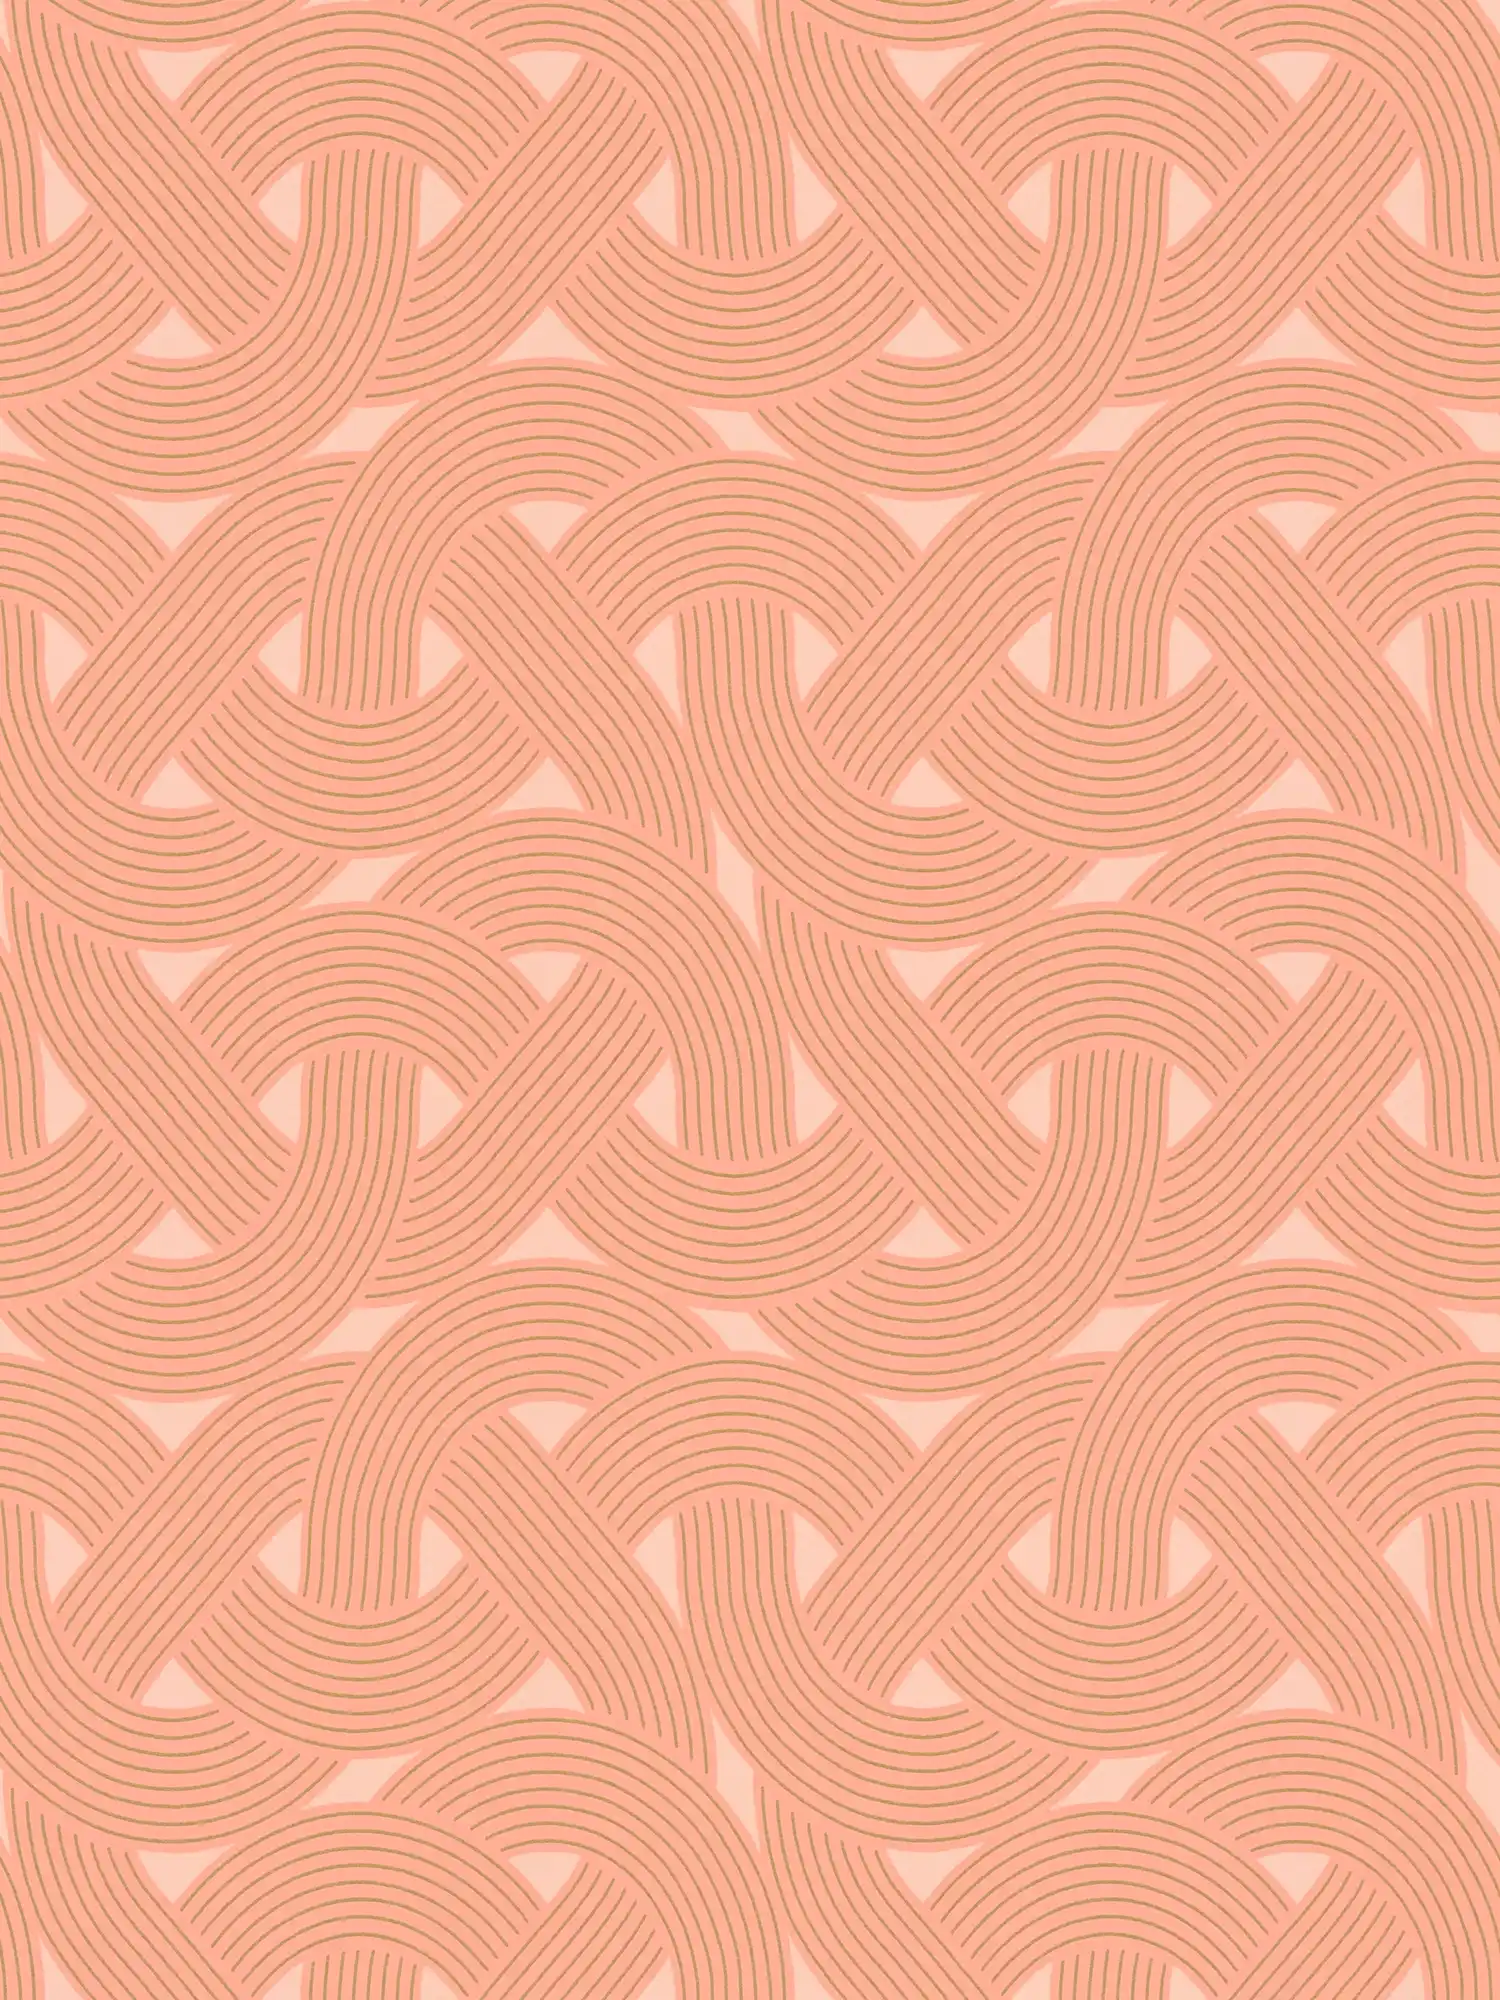         Motivo grafico a linee in stile Art déco - arancione, rame
    